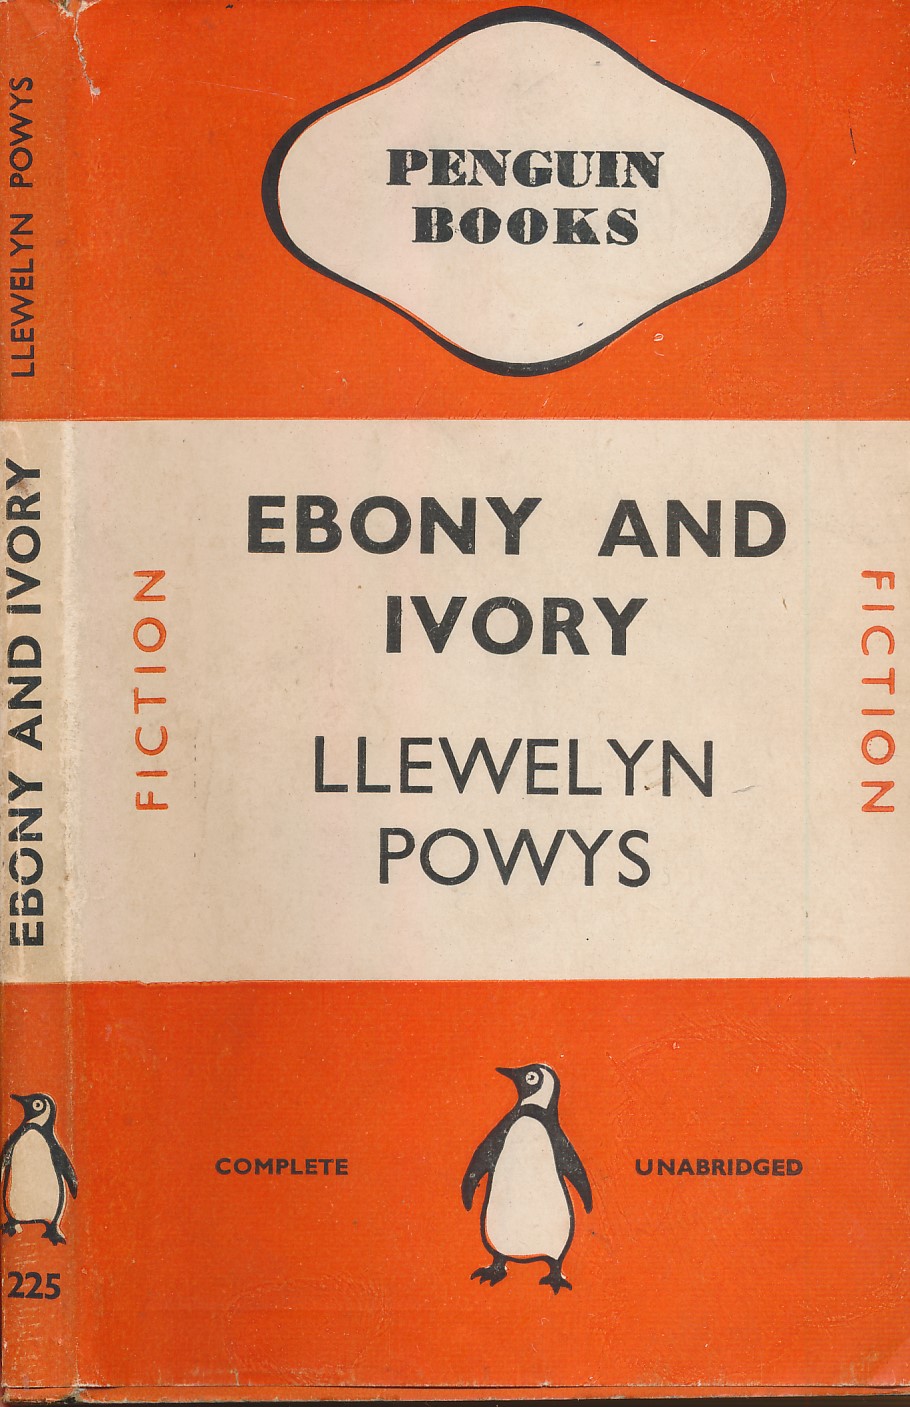 Ebony and Ivory. Penguin Fiction No 225